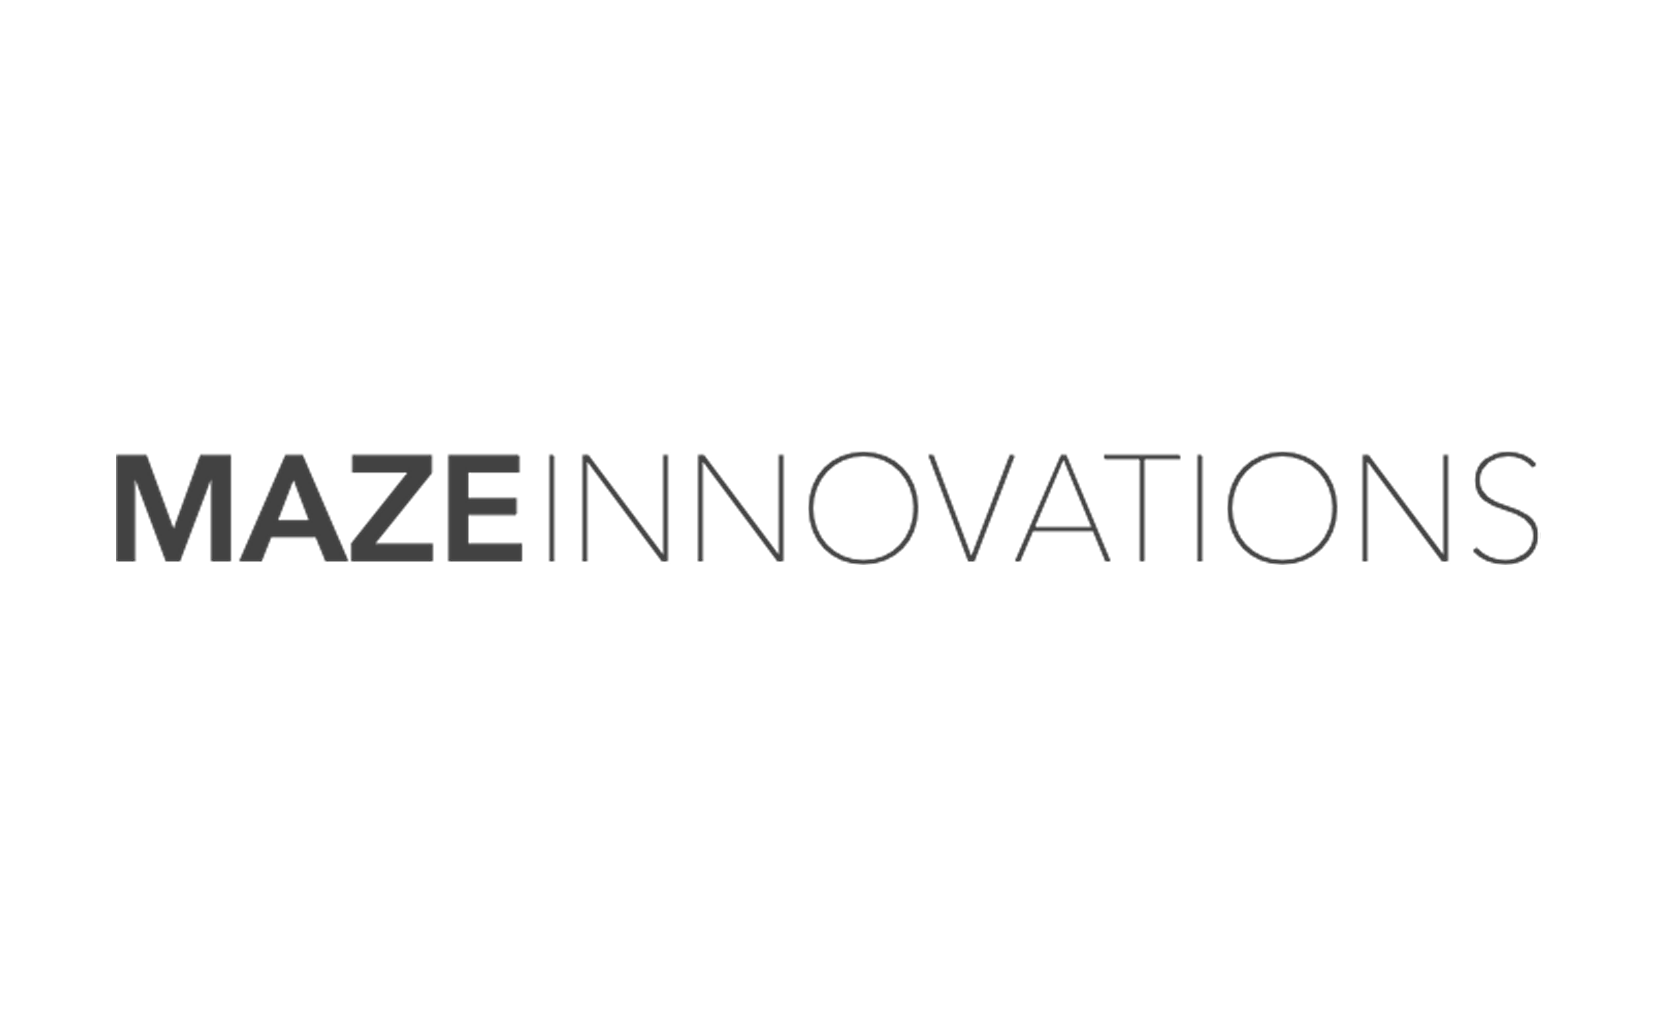 Maze Innovations